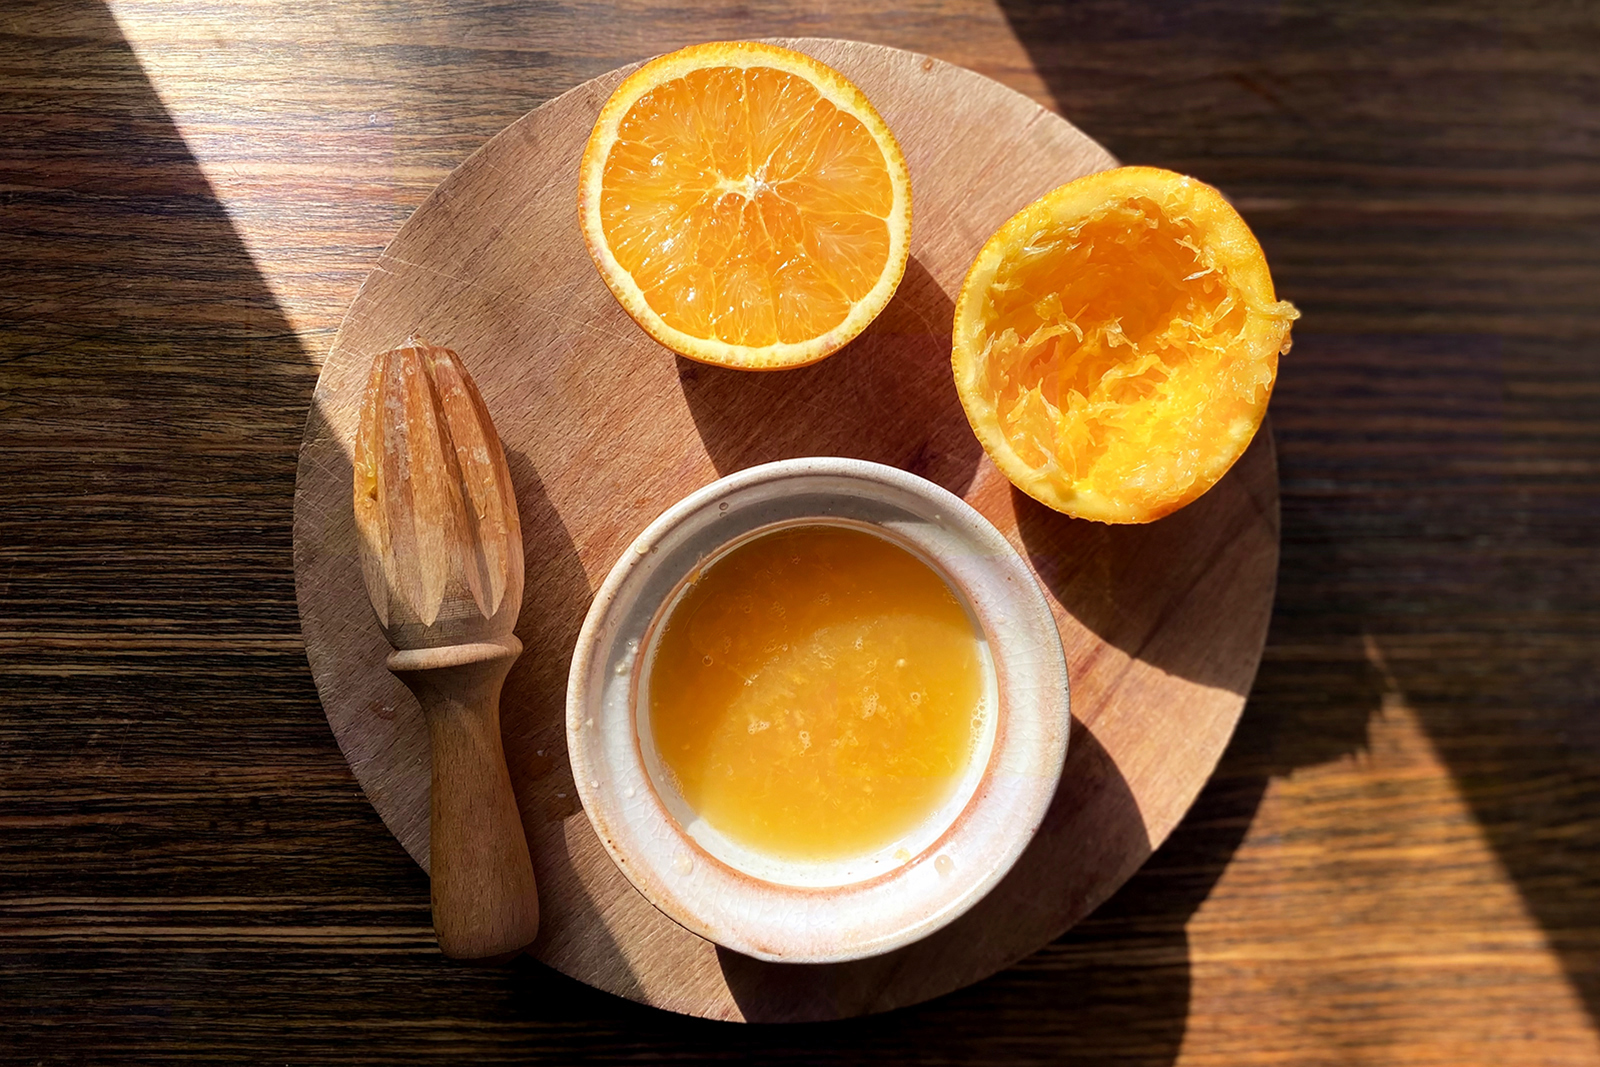 Апельсин лучше выбирать с ярким кисло-сладким вкусом. Оставшуюся половину апельсина можно использовать для украшения